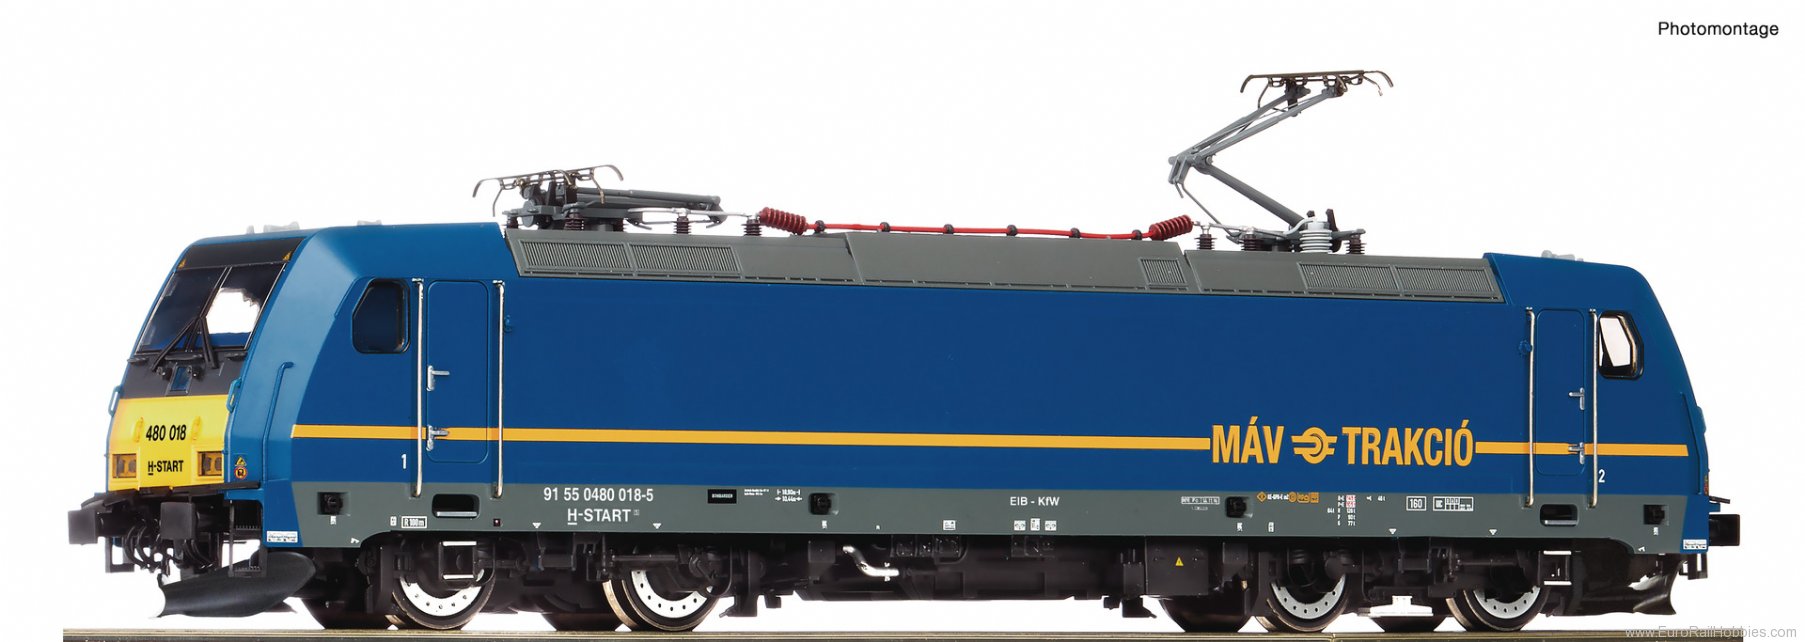 Roco 73339 Electric locomotive 480 018-5, MAV (Digital S